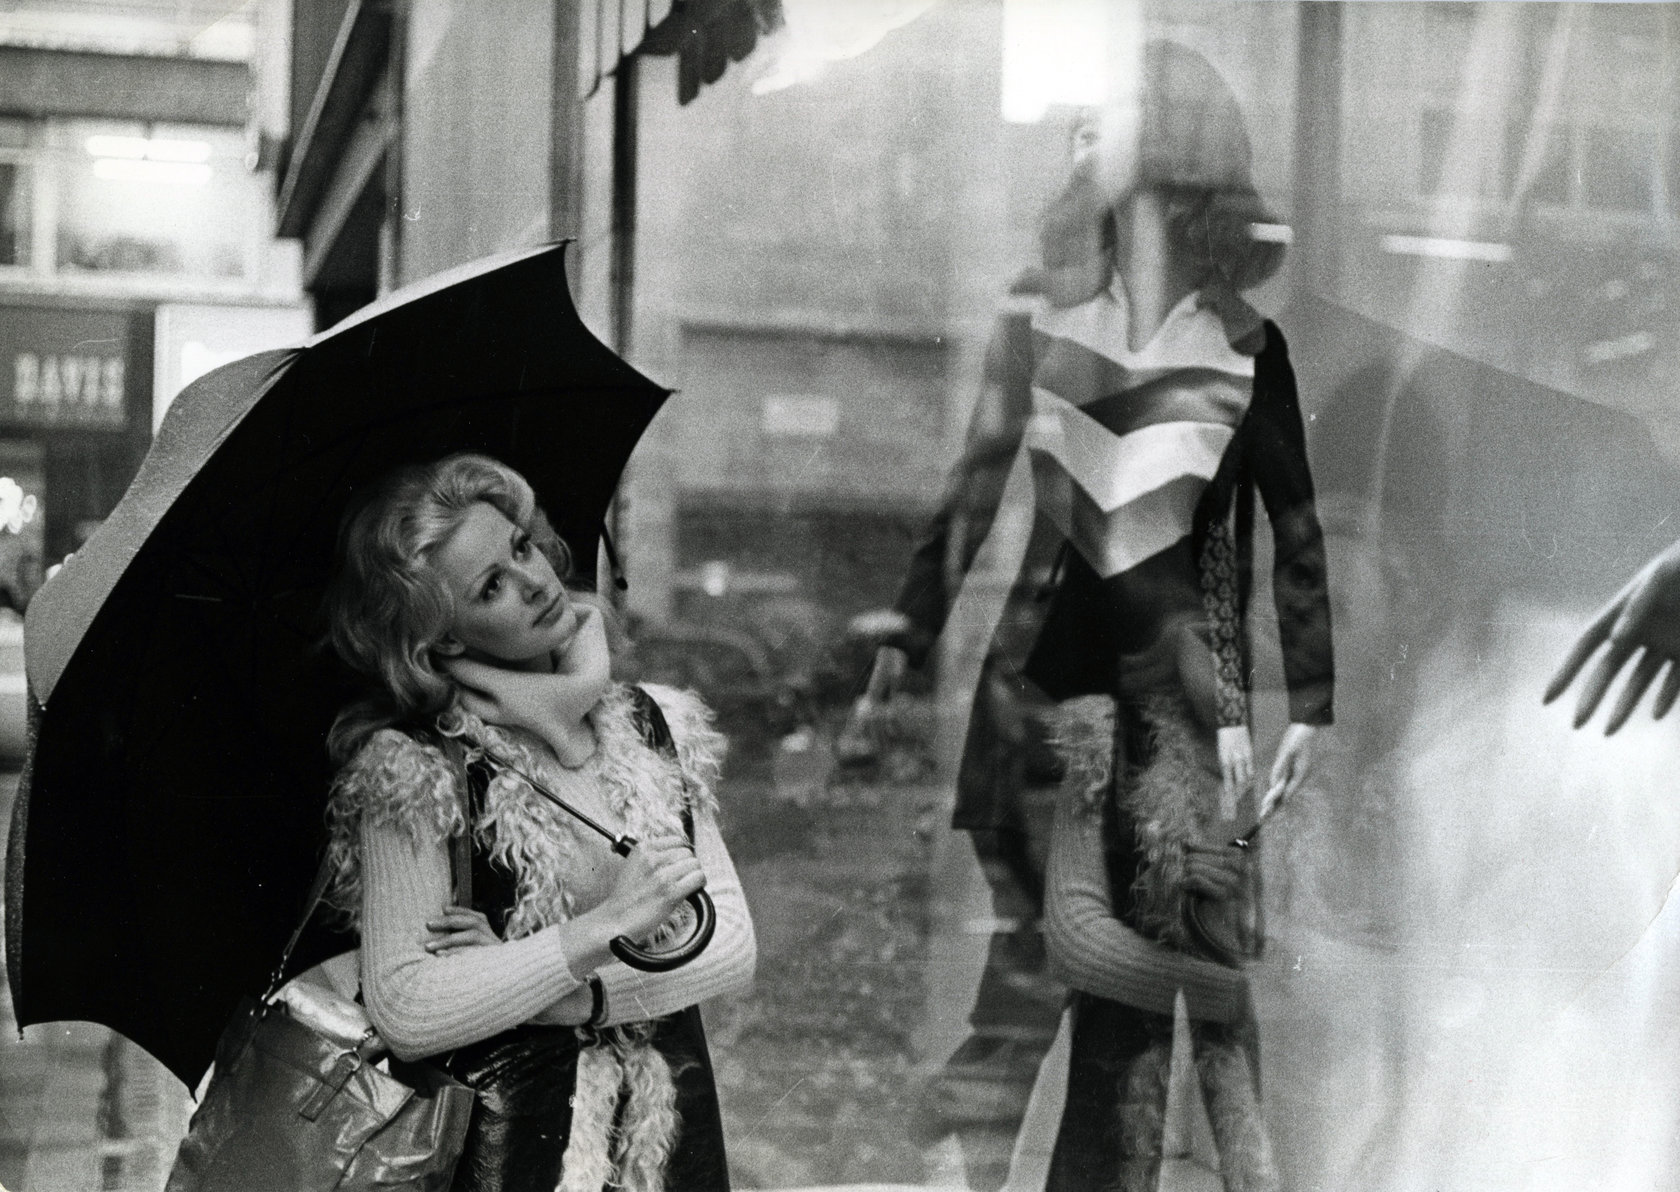 Frau unter Regenschirm vor Auslage mit Schaufensterpuppe